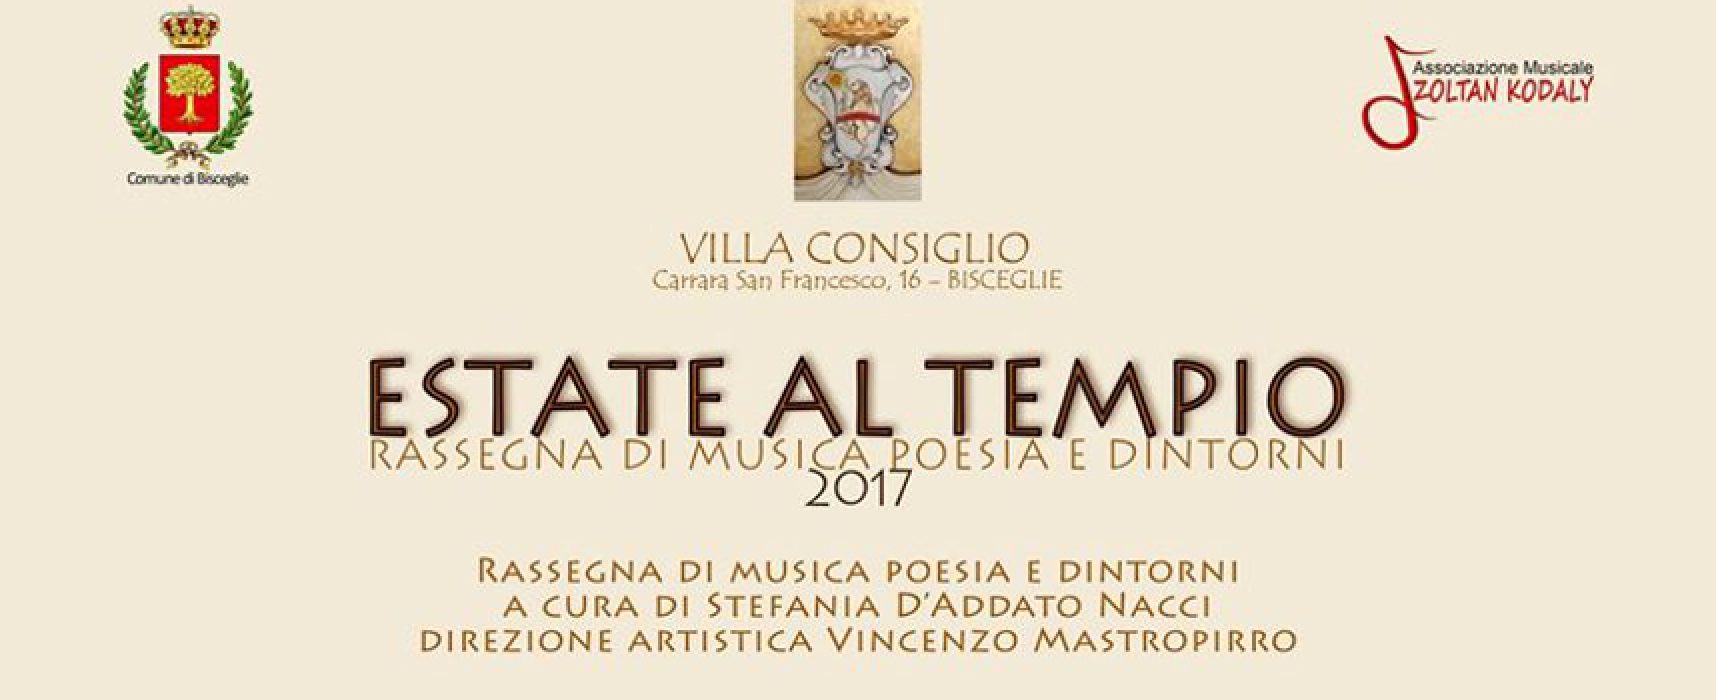 Ritorna la rassegna “Estate al tempio”: arte, musica e poesia a Villa Consiglio